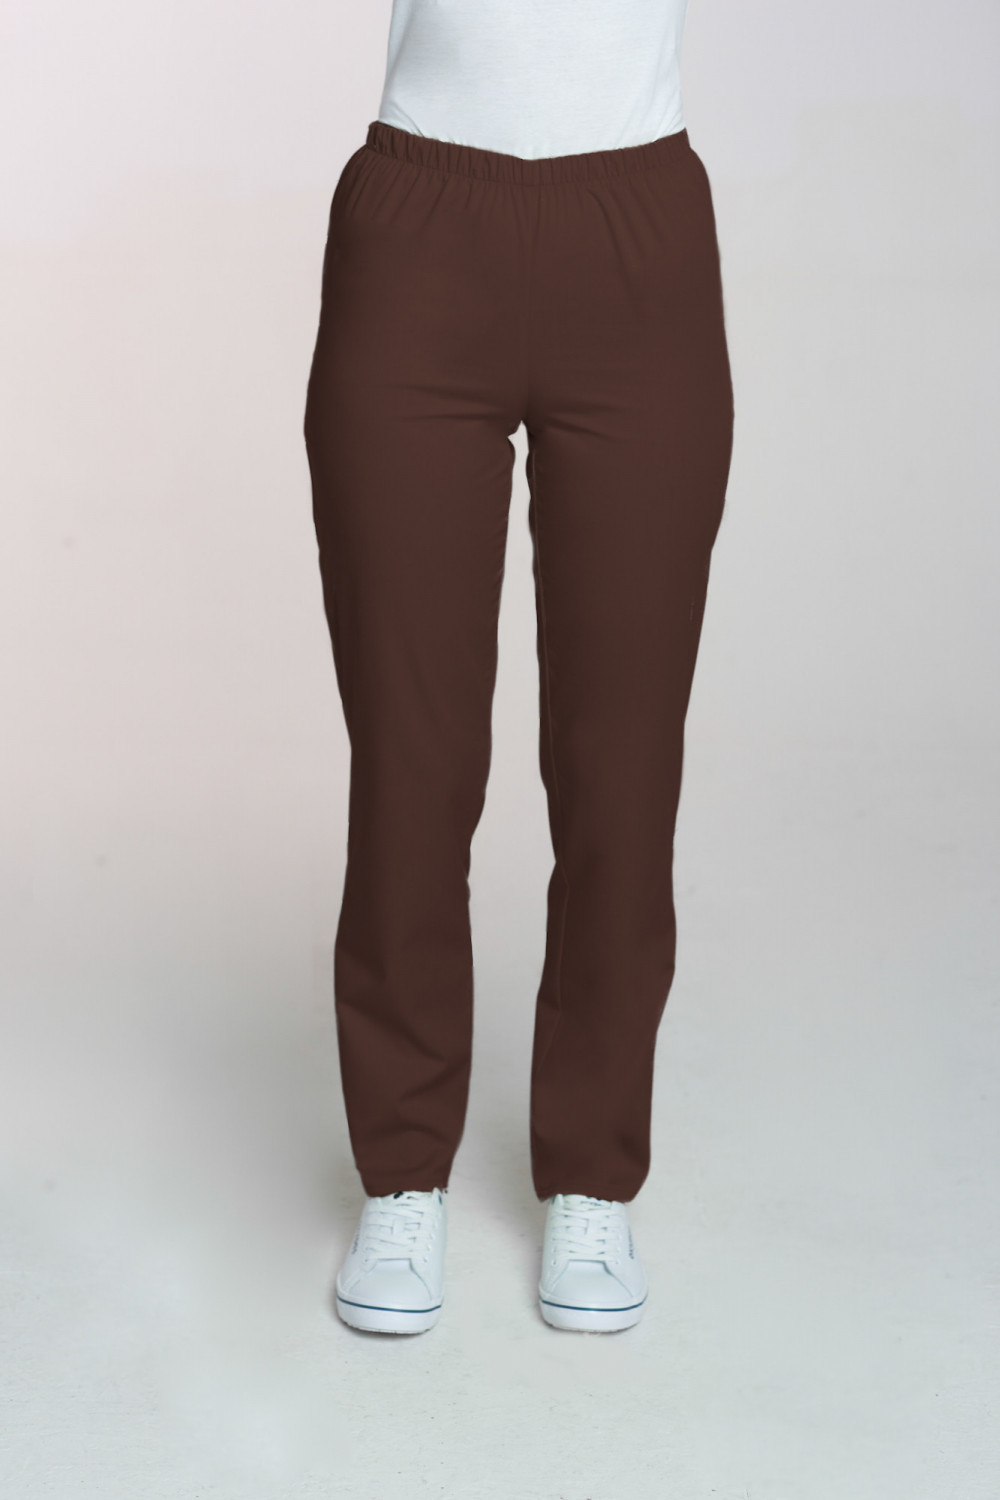 M-086 Spodnie damskie medyczne spodnie do pracy kolor czekolada